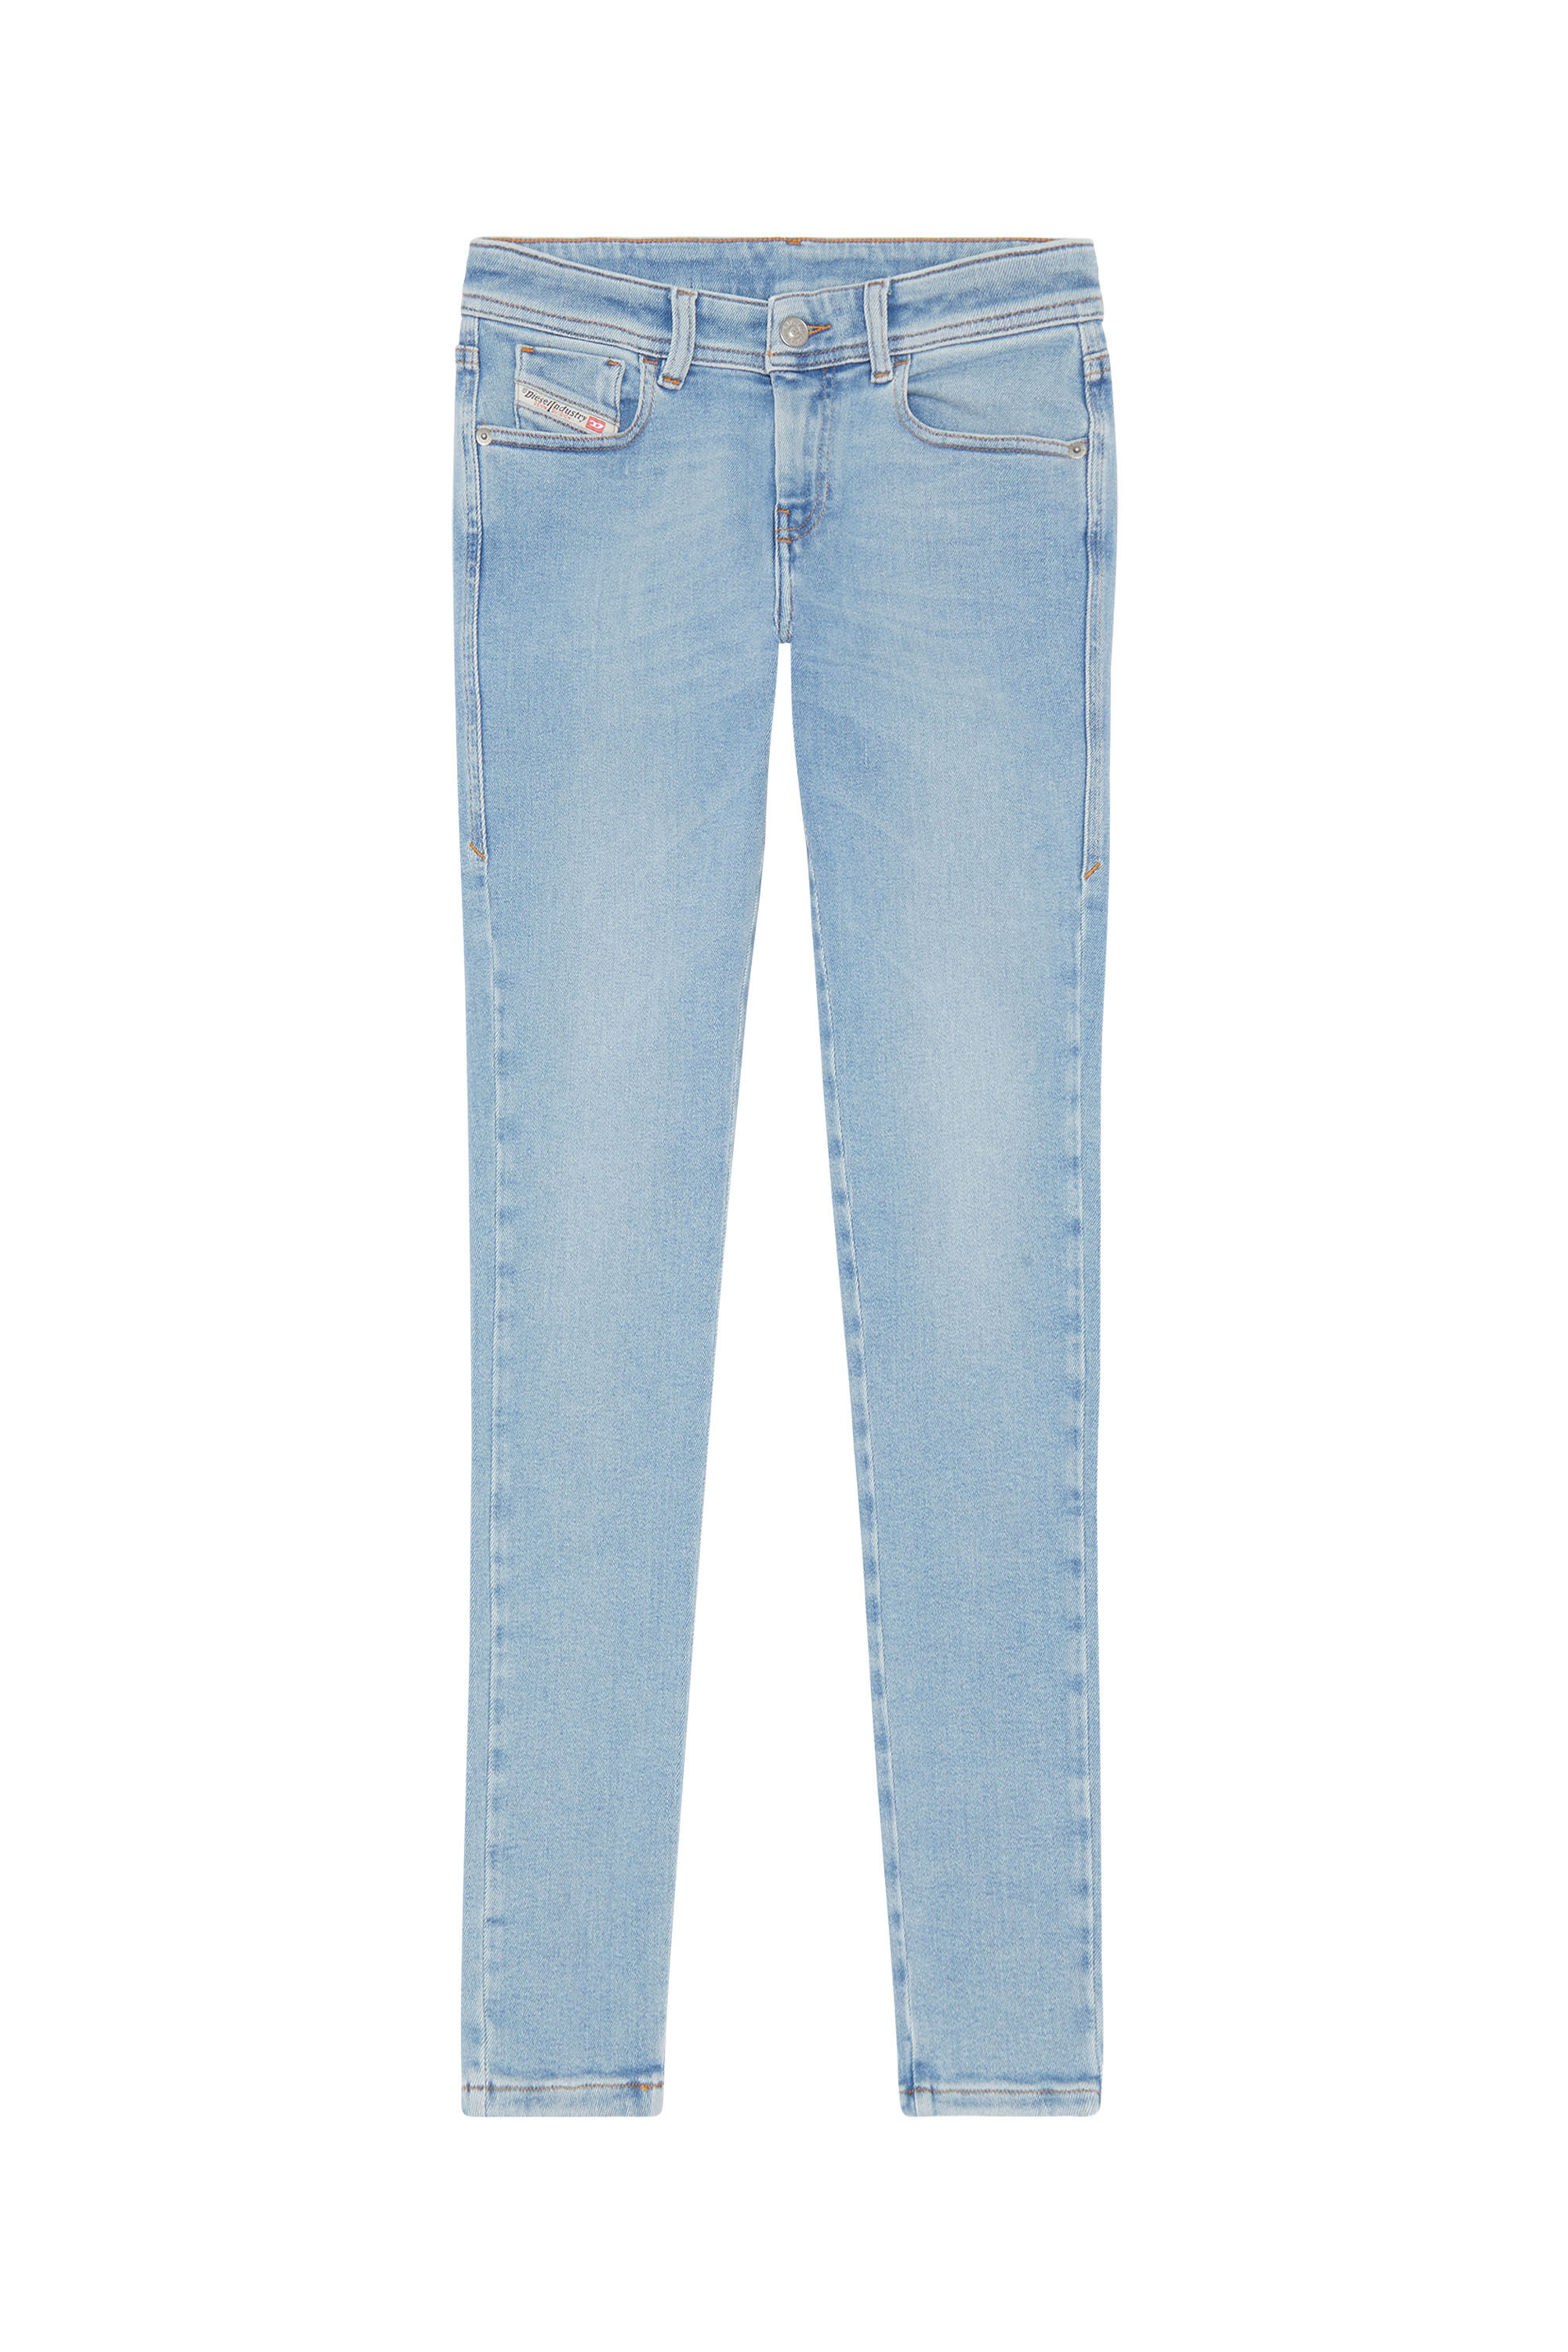 Diesel - Super skinny Jeans 2017 Slandy 09F87, Light Blue - Image 2